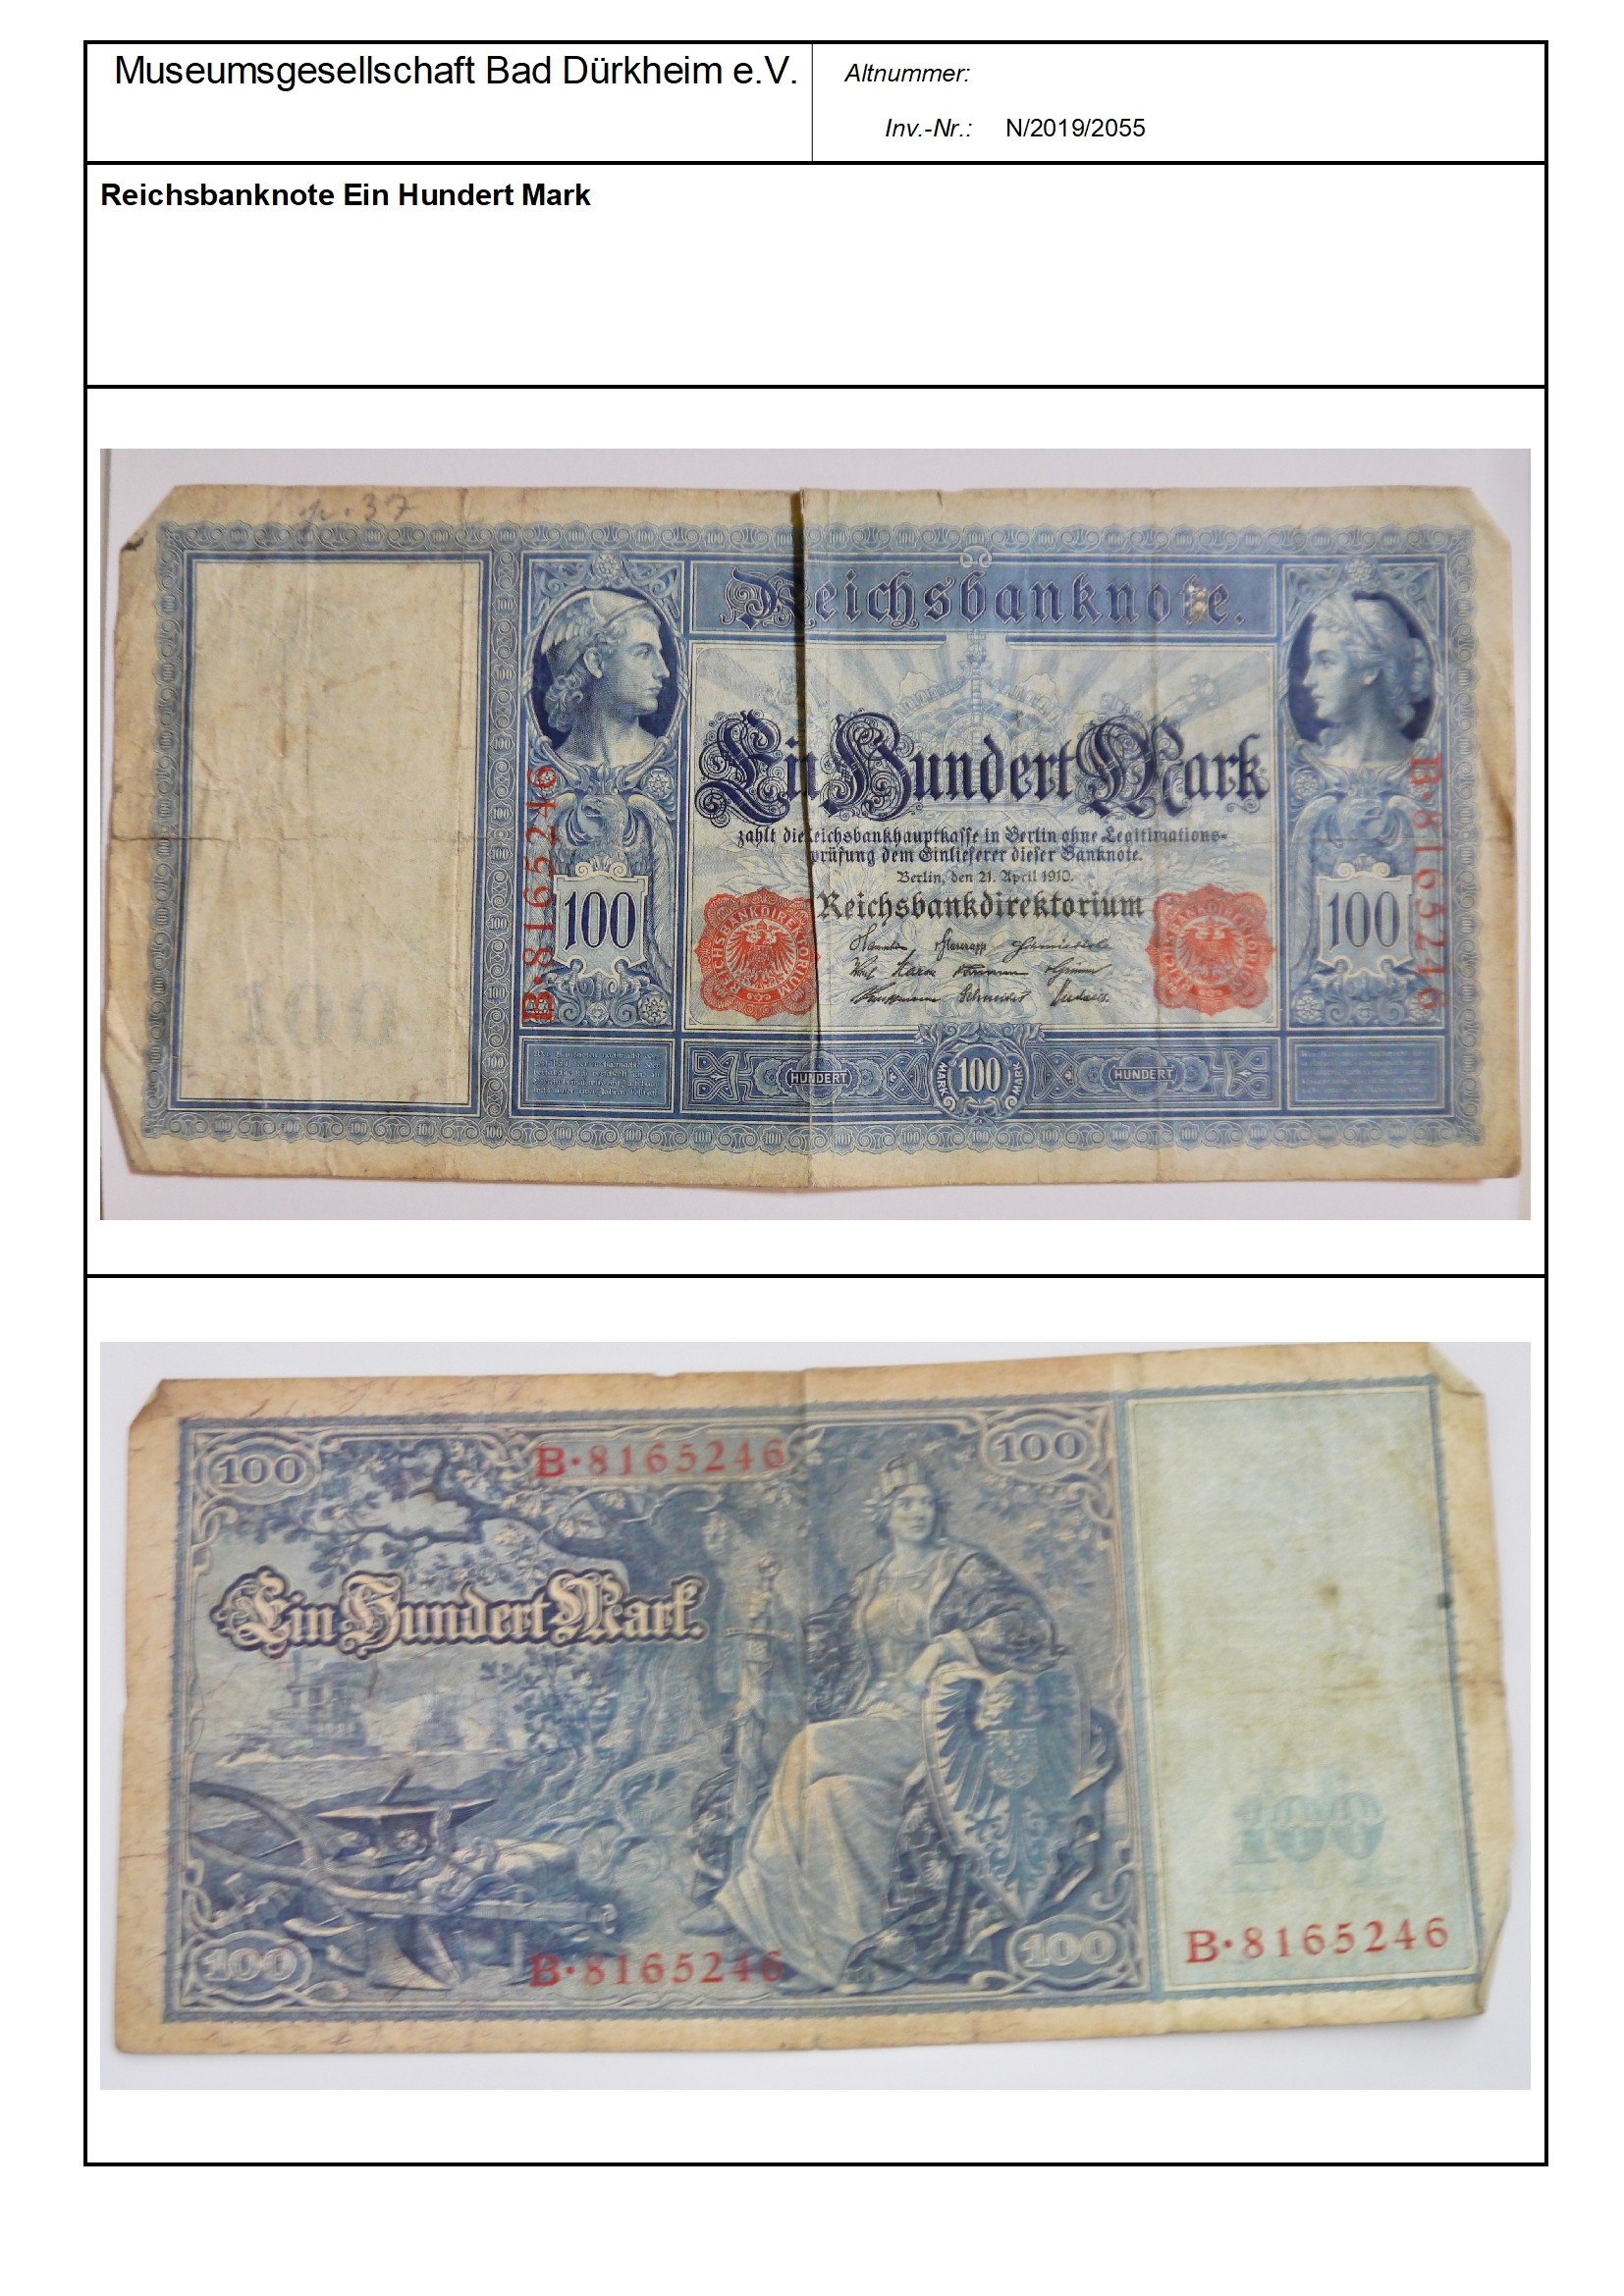 Reichsbanknote Ein Hundert Mark
Serien-Nummer: B*8165246 (Museumsgesellschaft Bad Dürkheim e.V. CC BY-NC-SA)